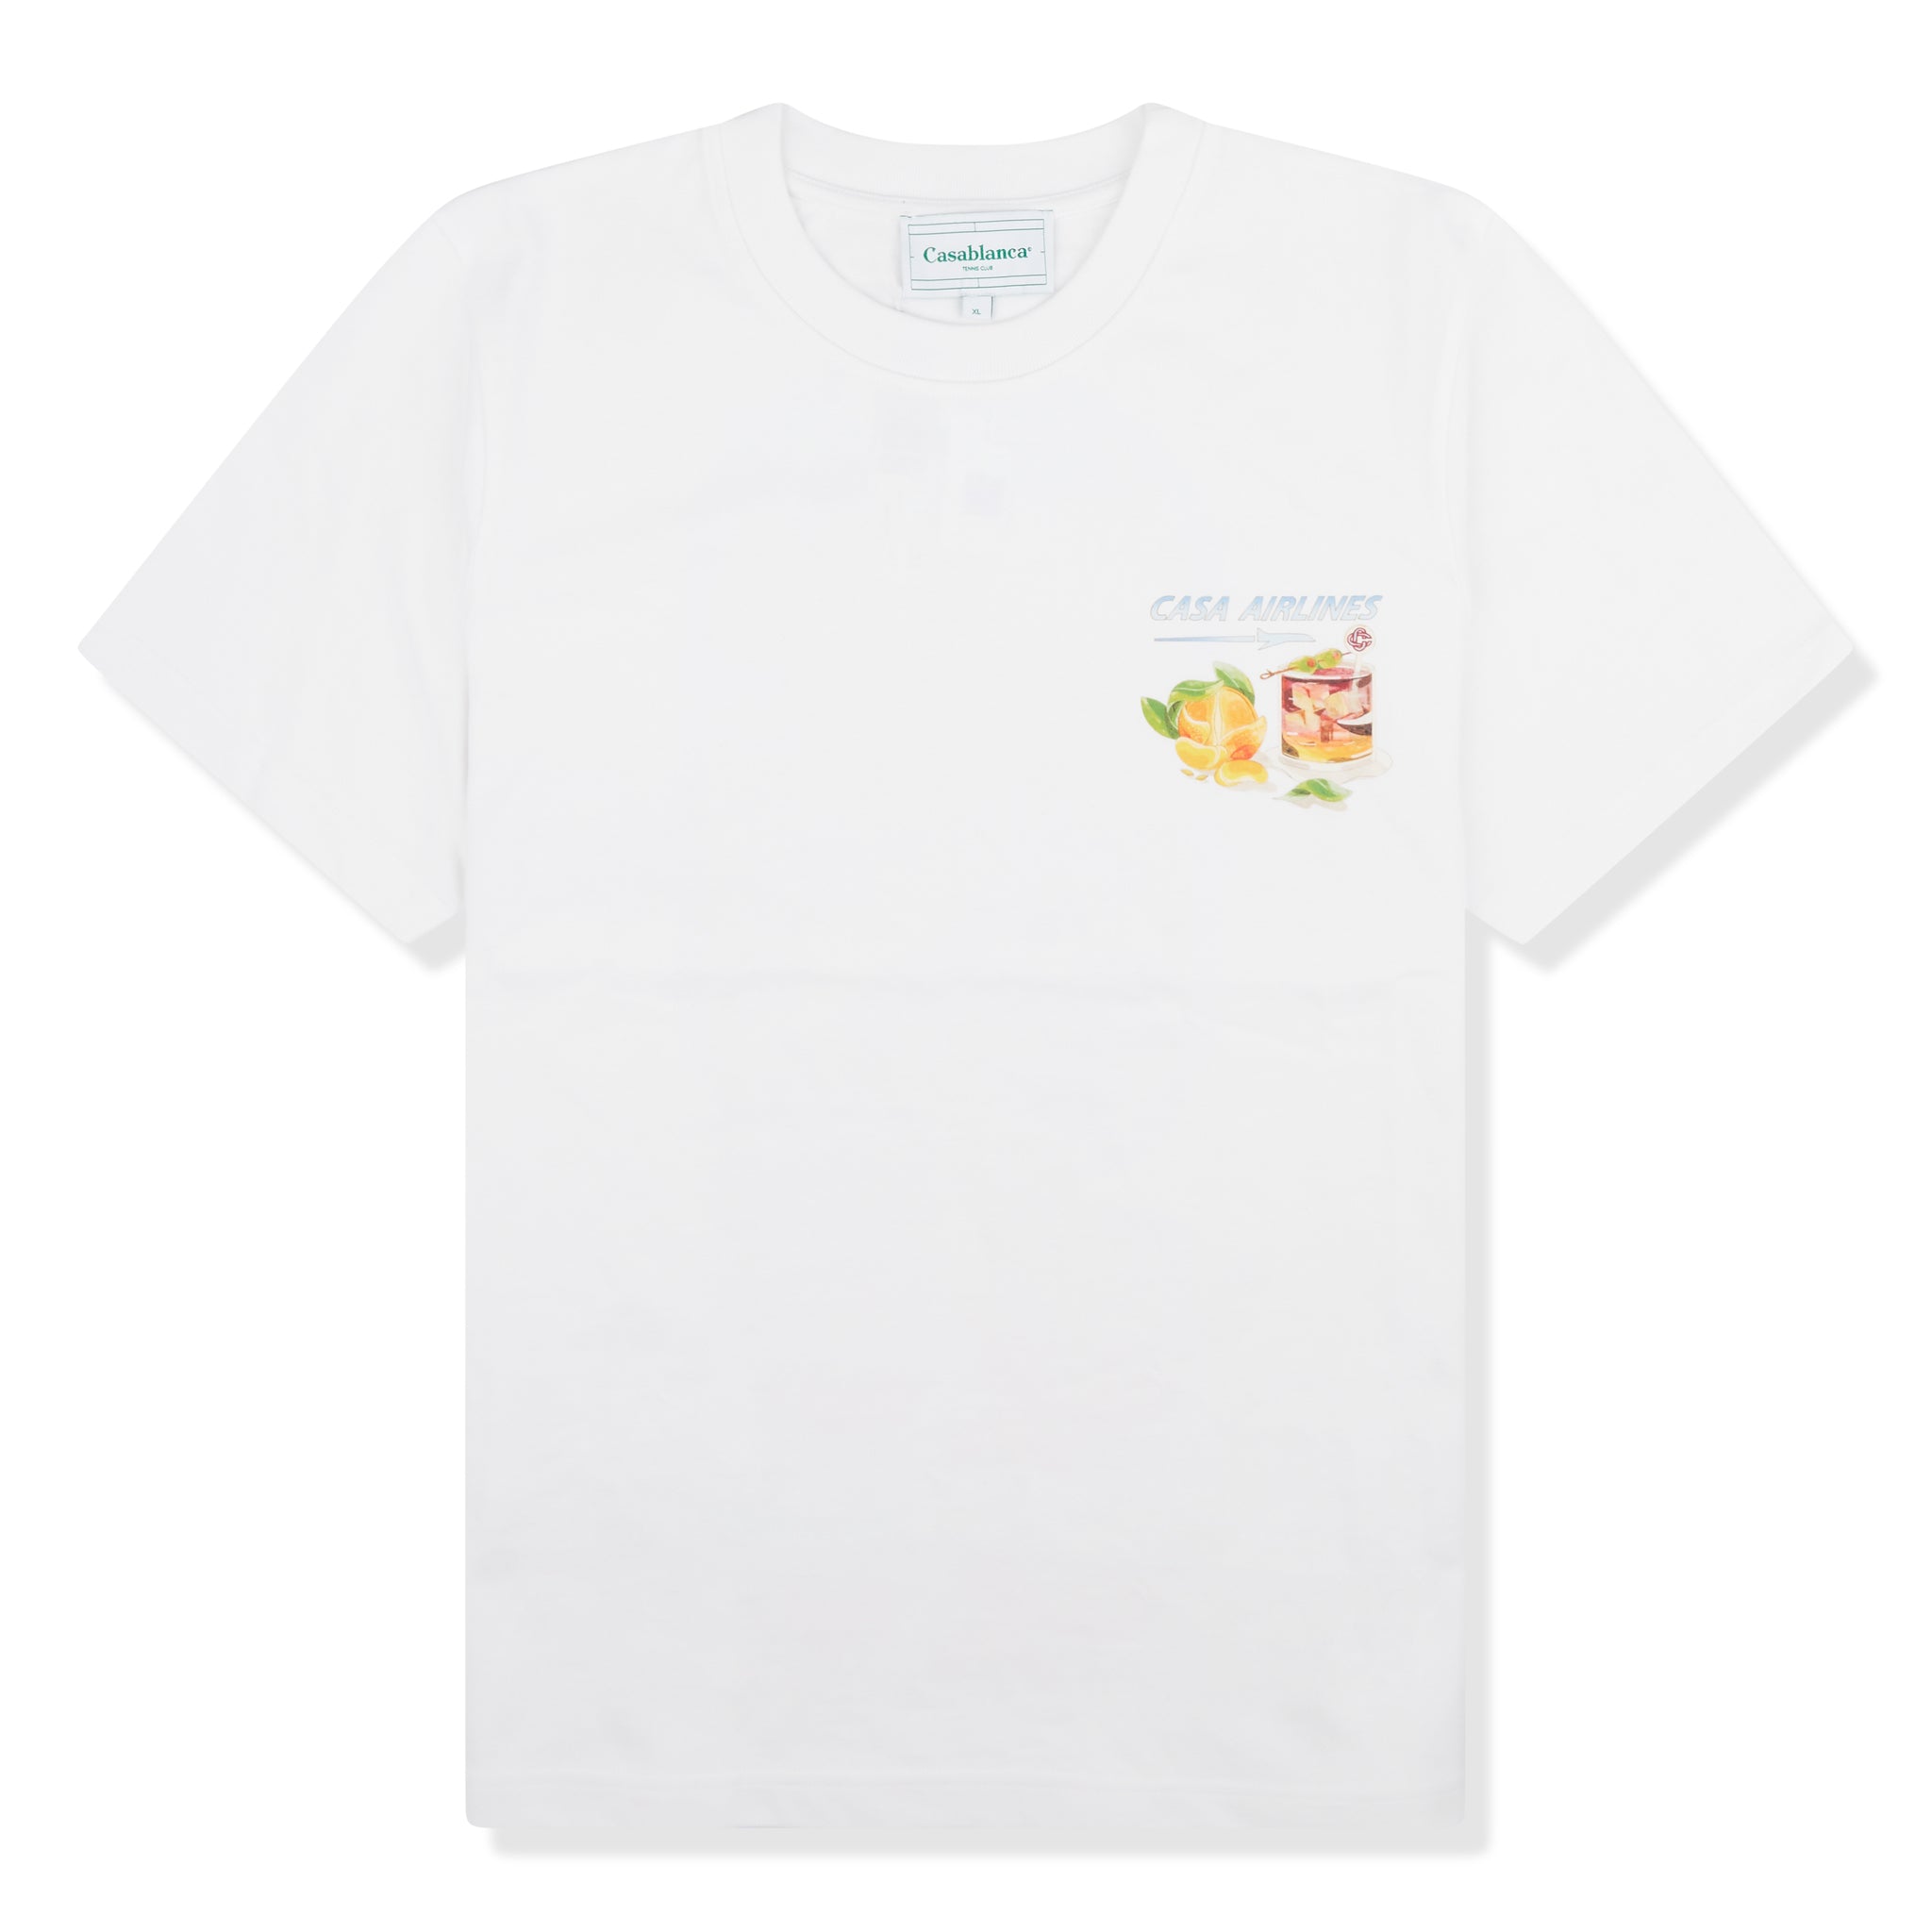 Louis Vuitton Japan Pre-Sale Monogram Frilled T-Shirt, White, L